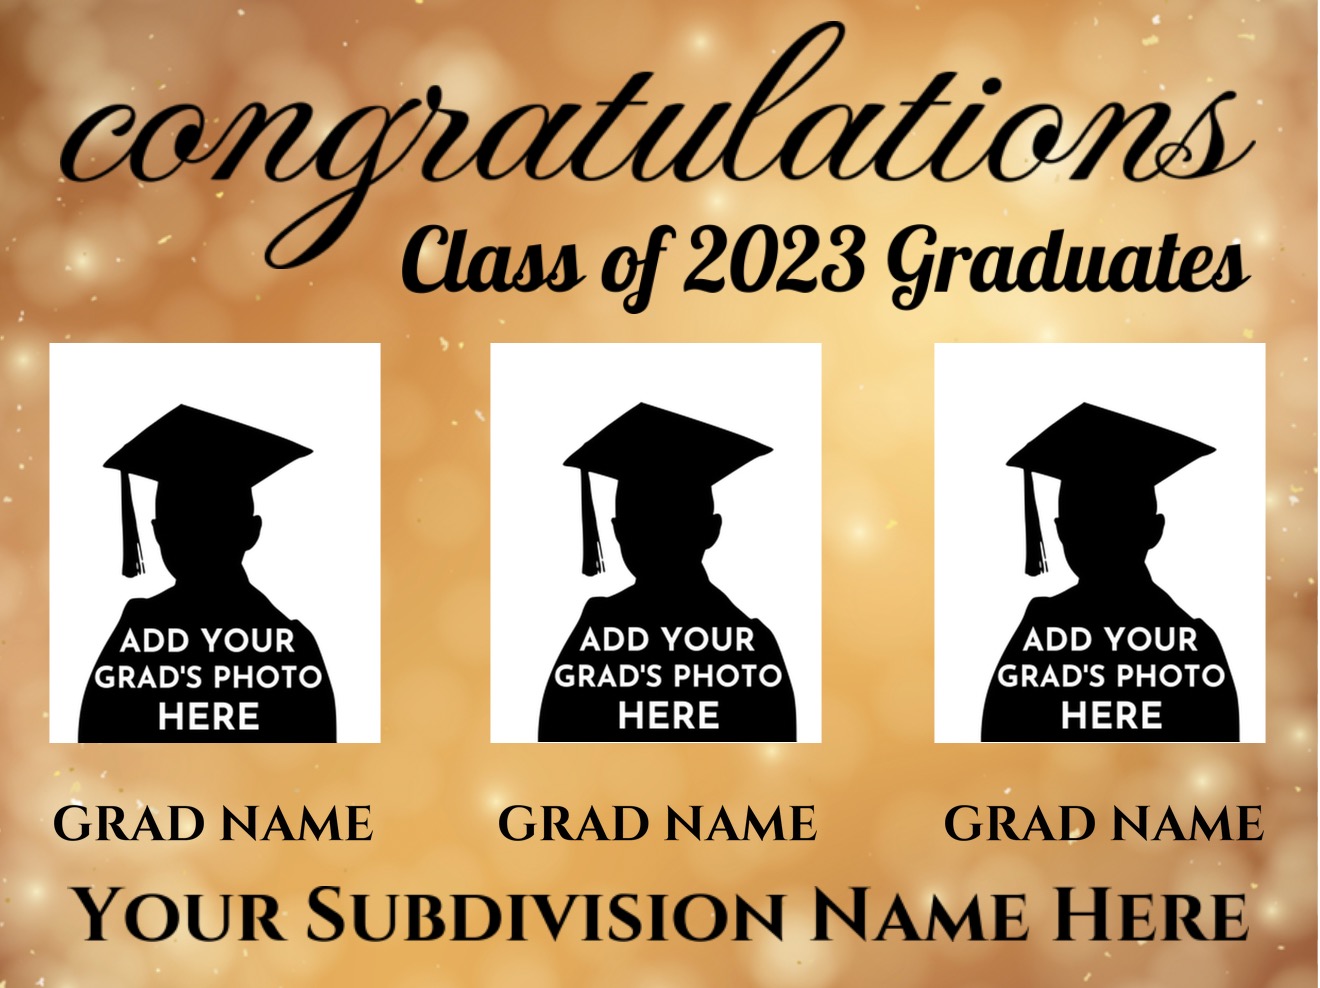 subdivision Graduation banner Design 03